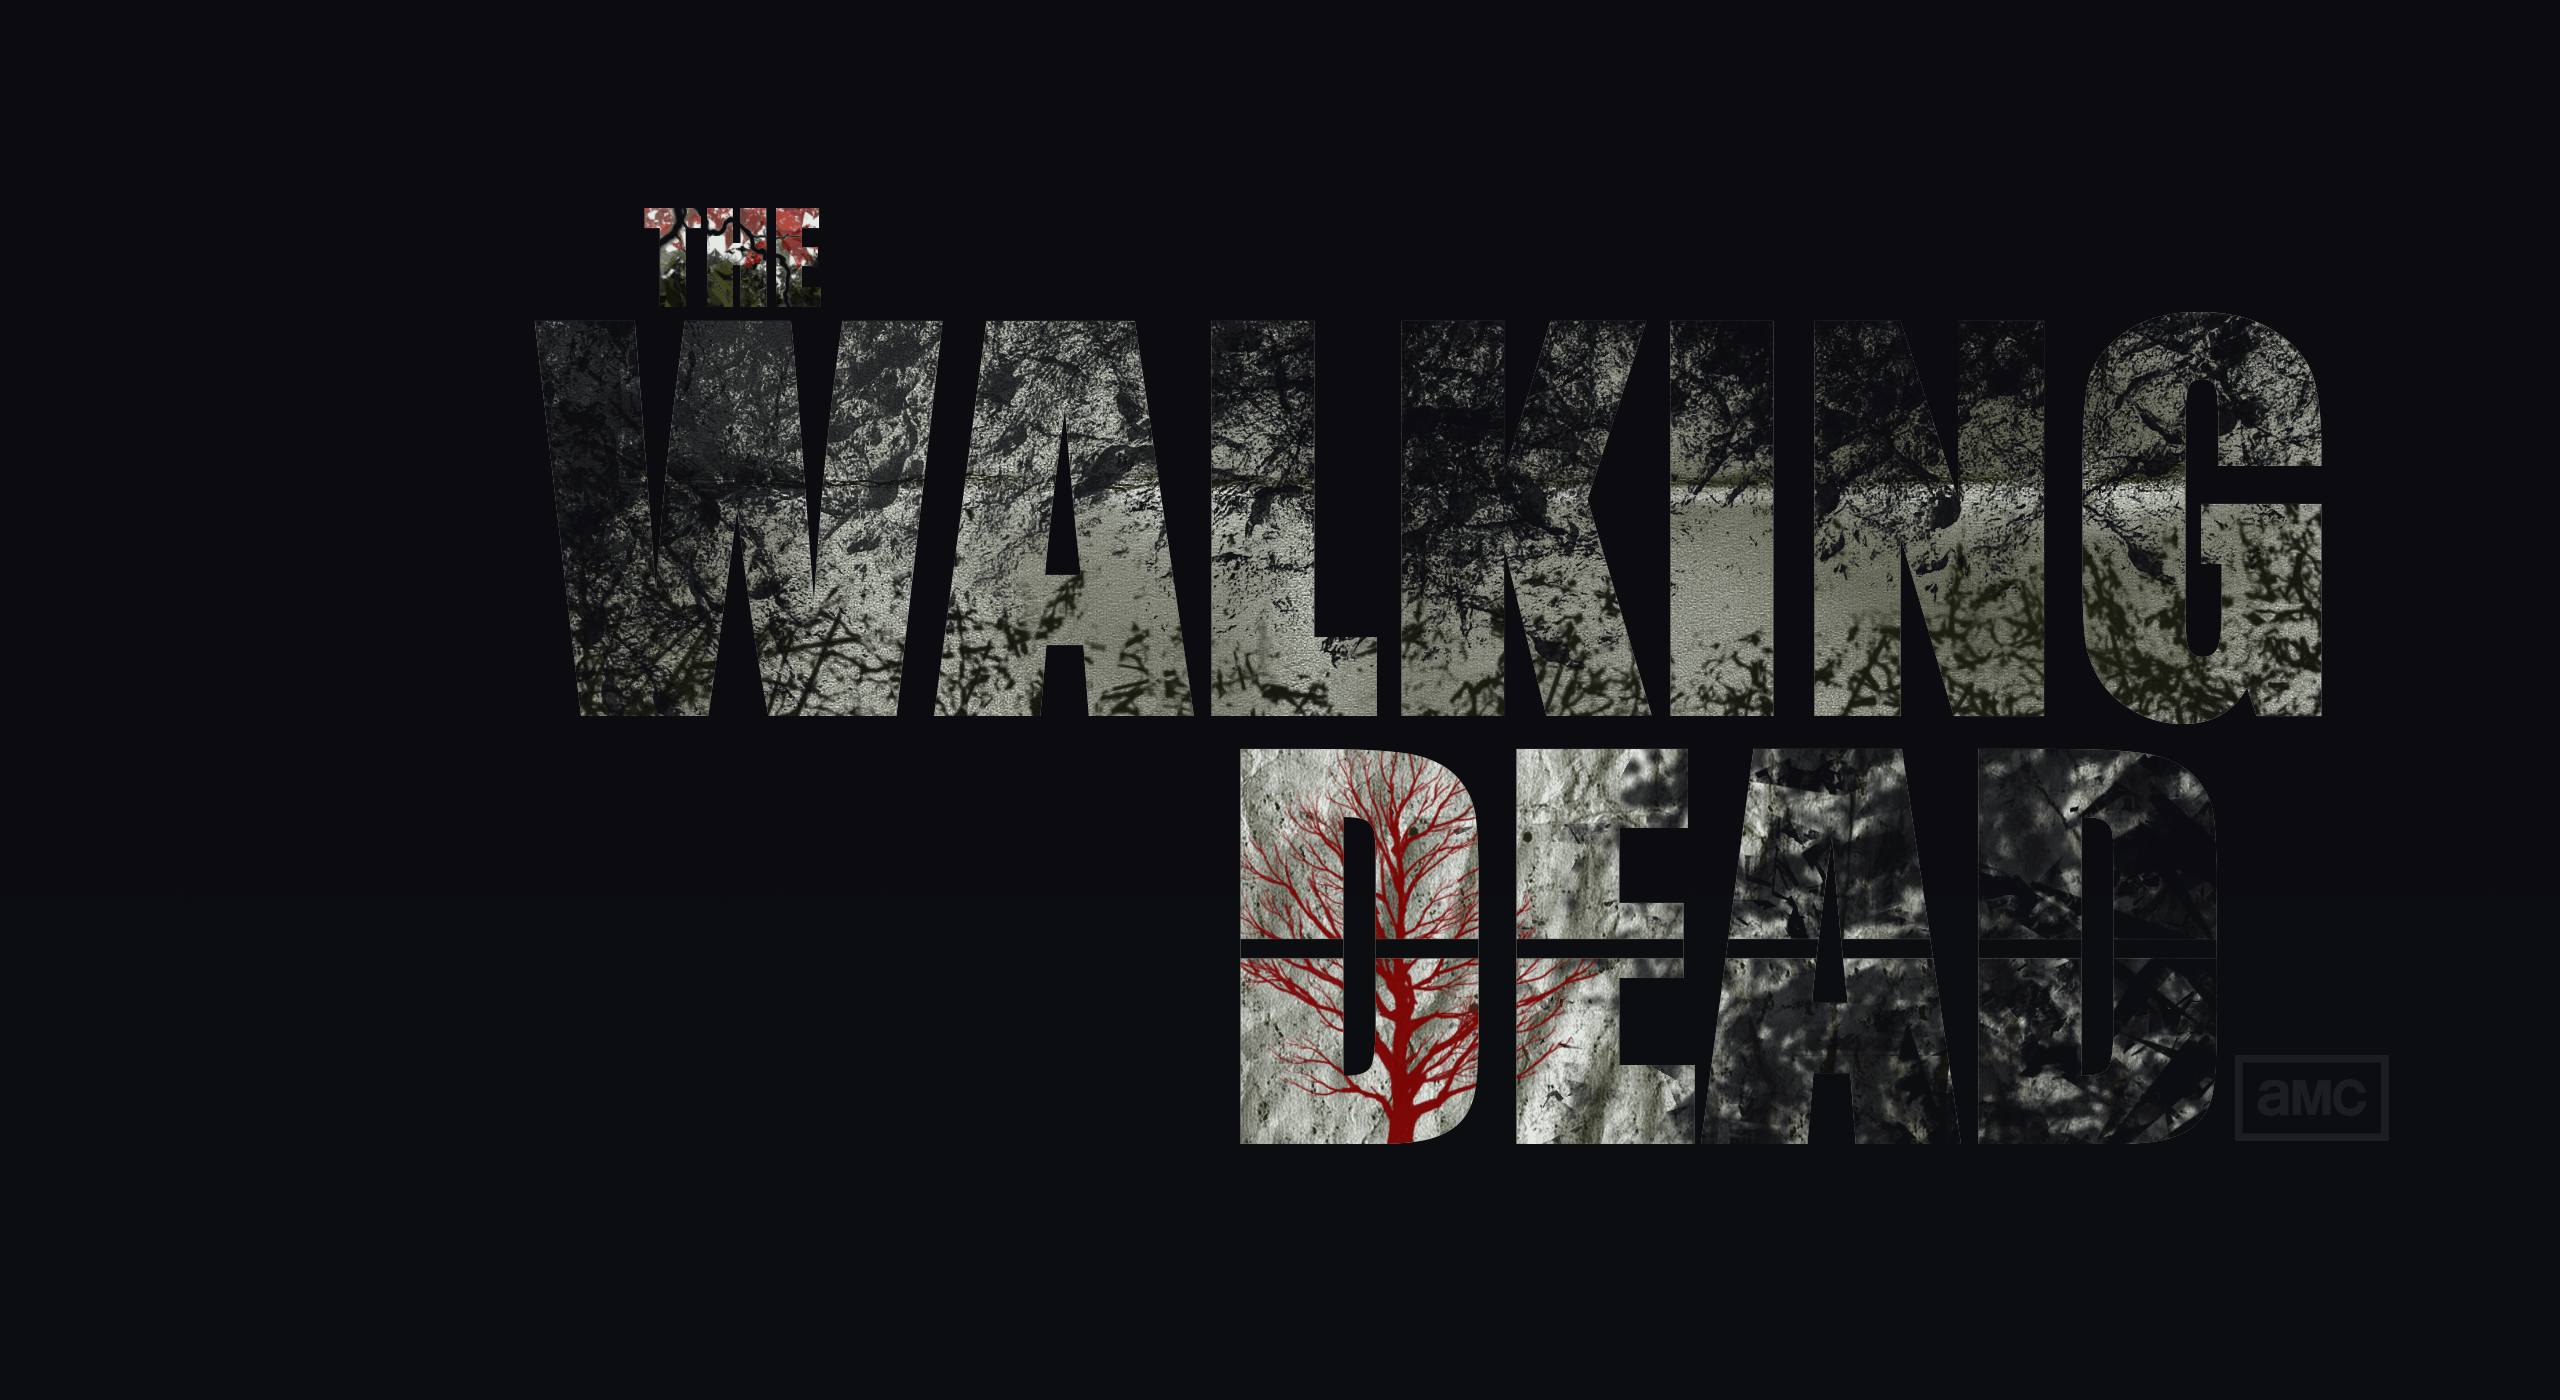 The Walking Dead Wallpaper Season 6